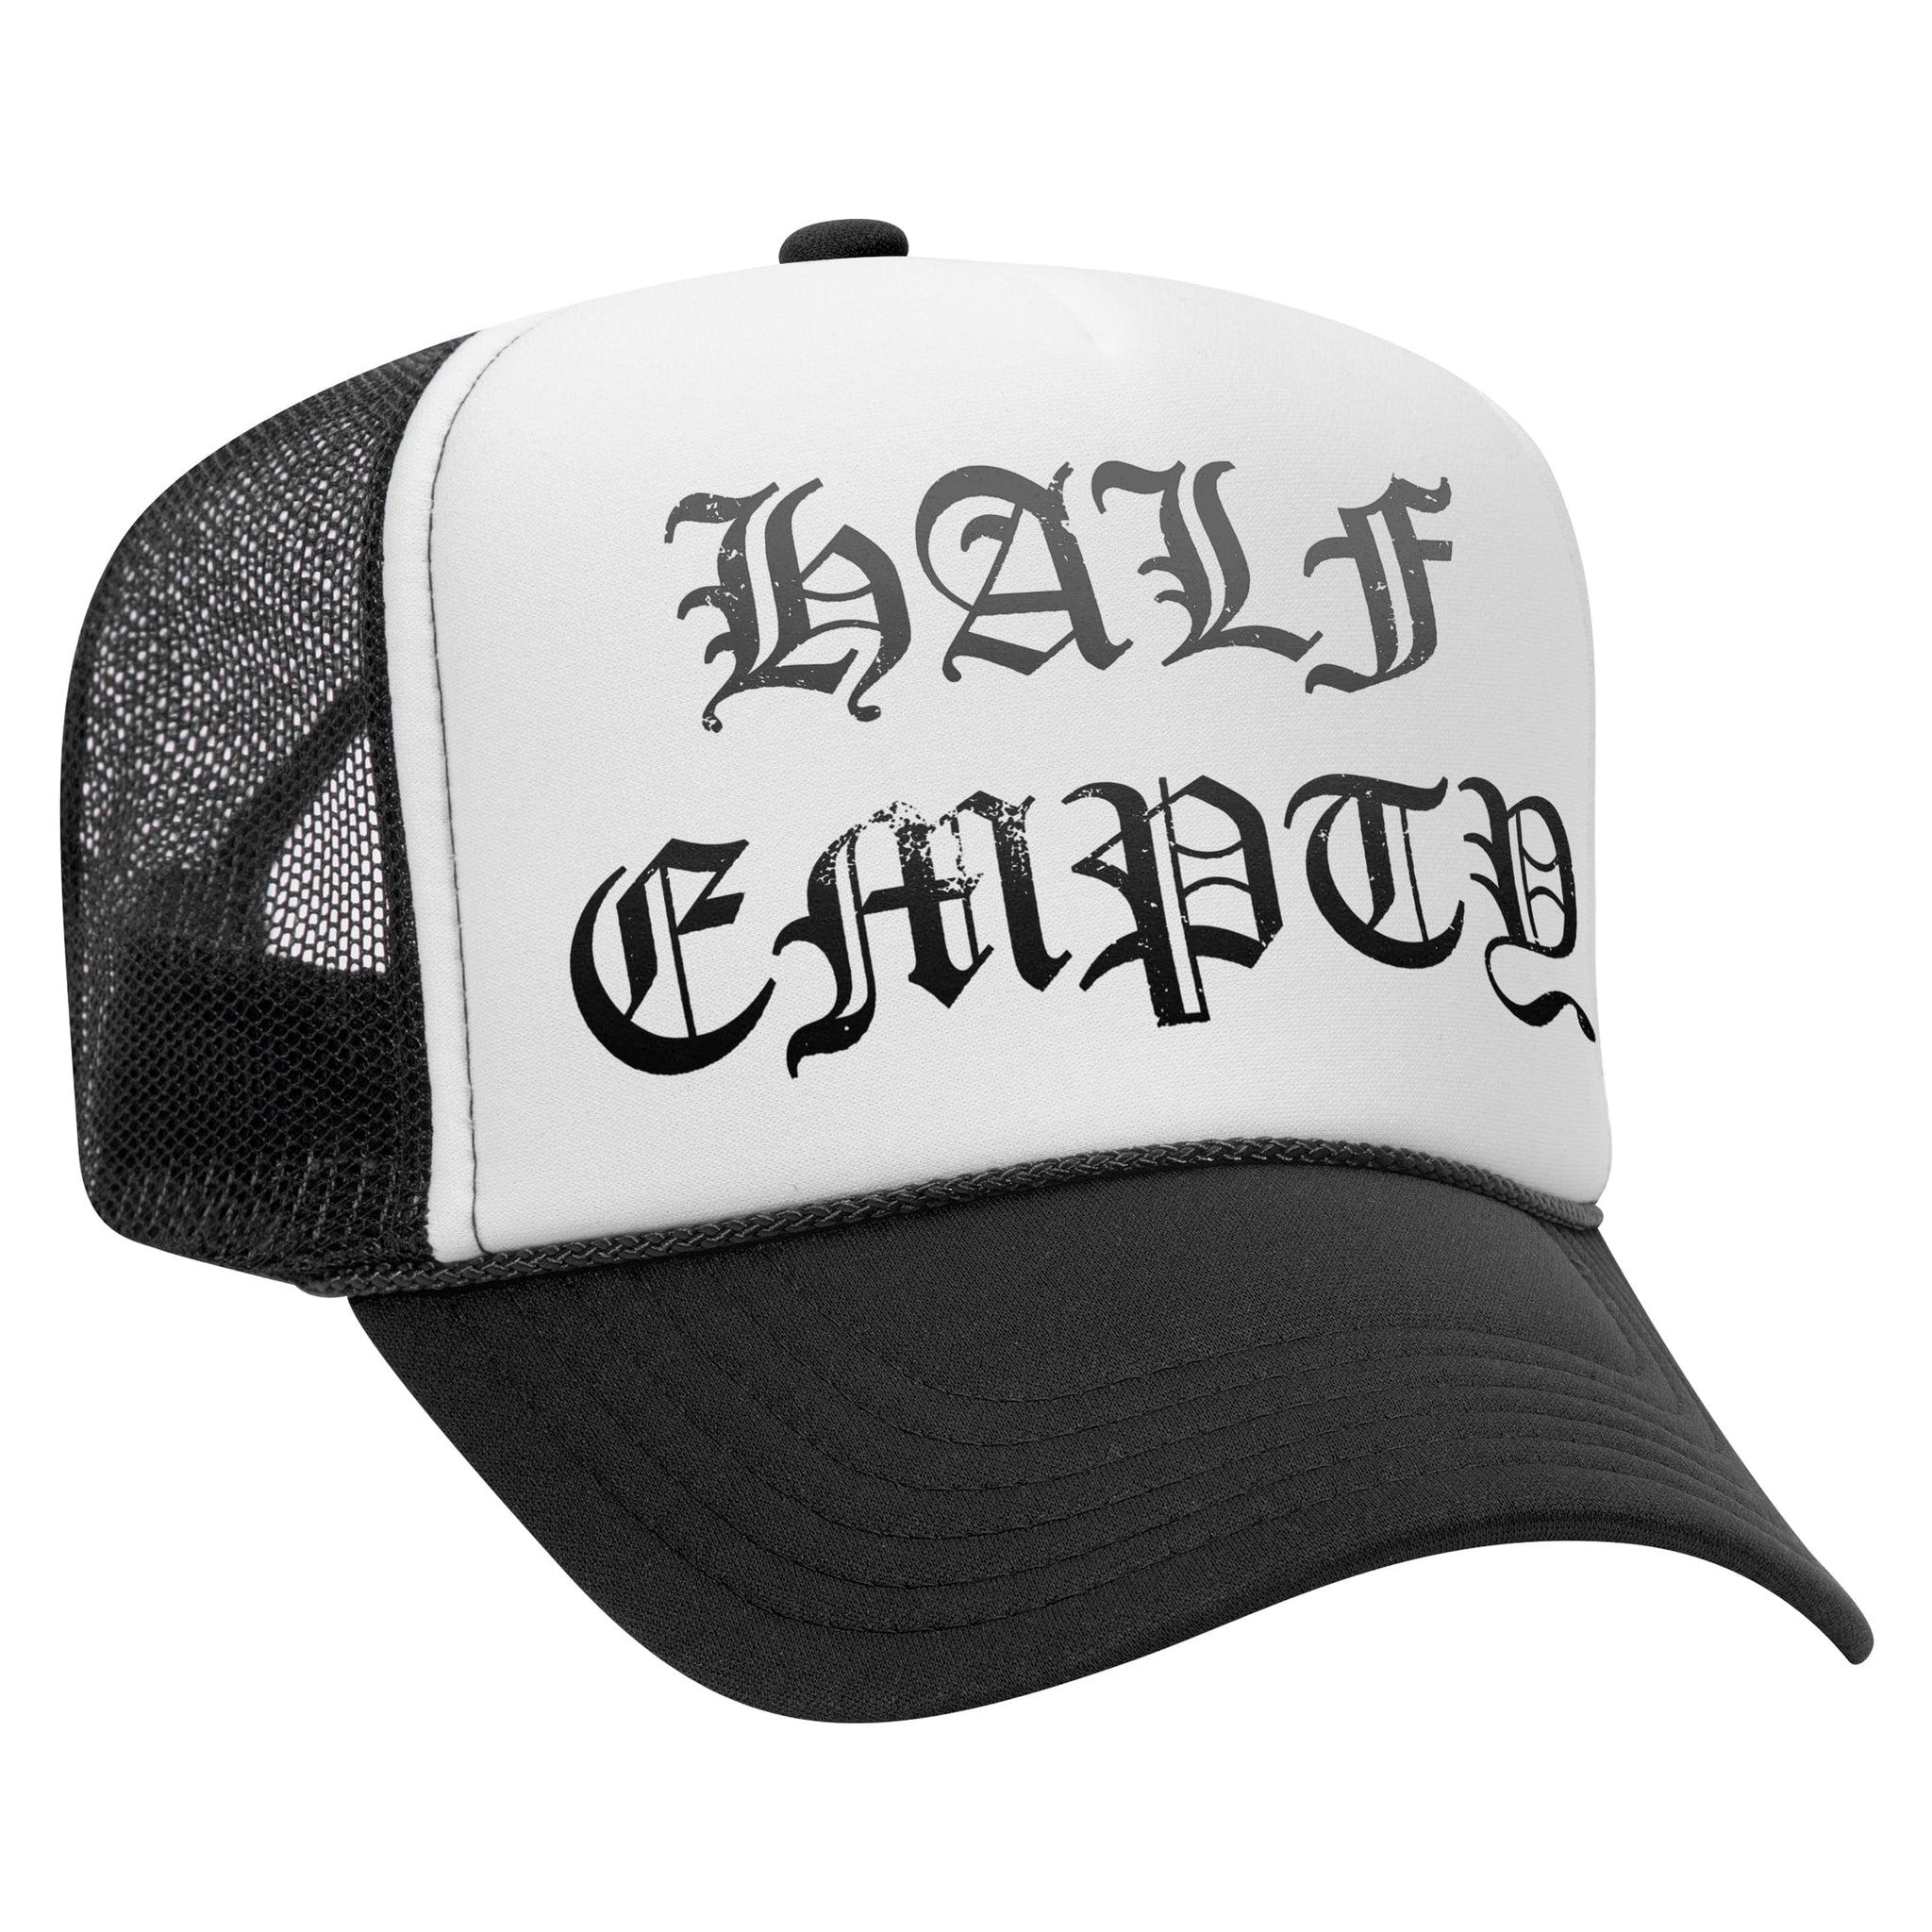 'HALF EMPTY' TRUCKER HAT